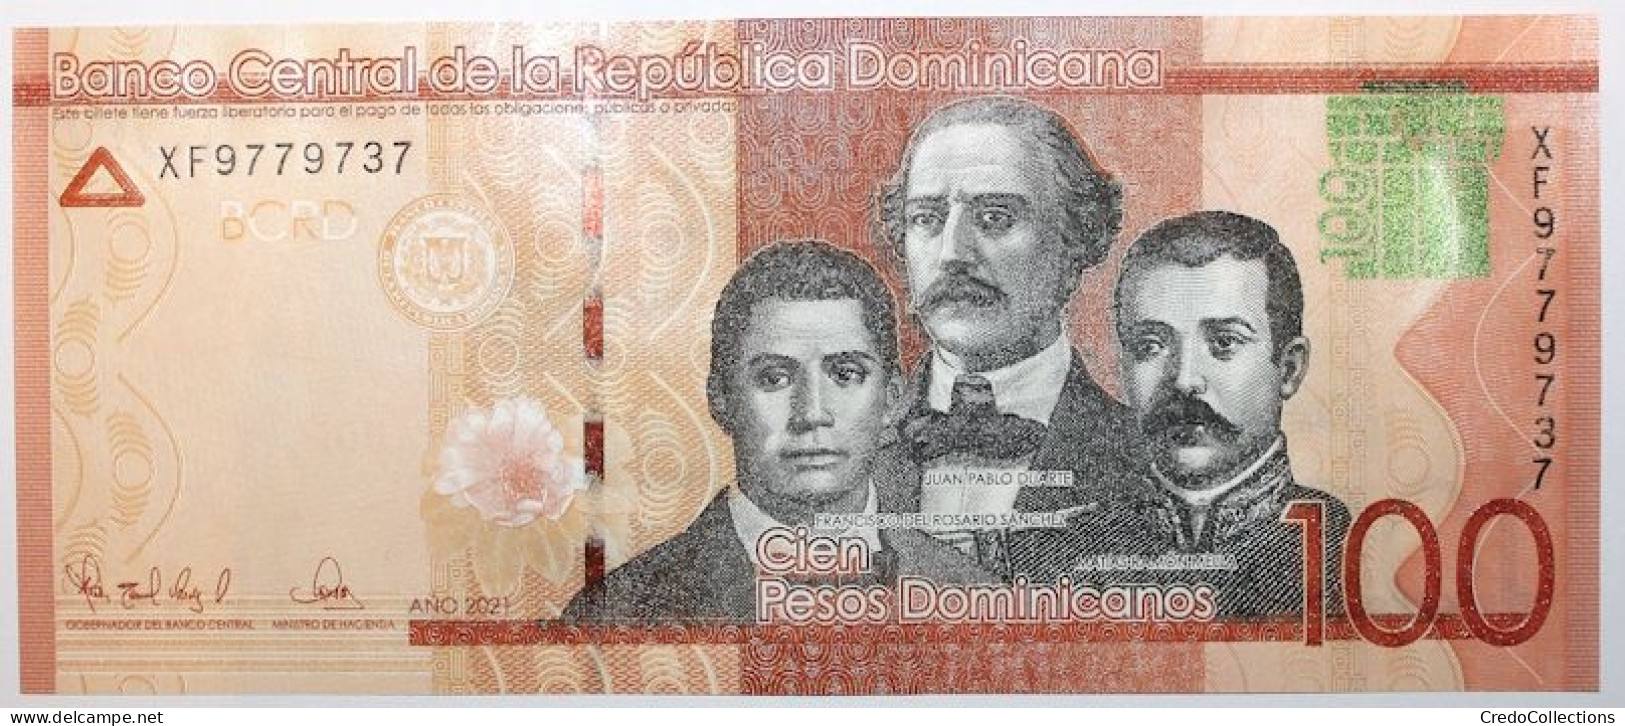 Dominicaine (Rép.) - 100 Pesos - 2021 - PICK 190g - NEUF - Dominicaine